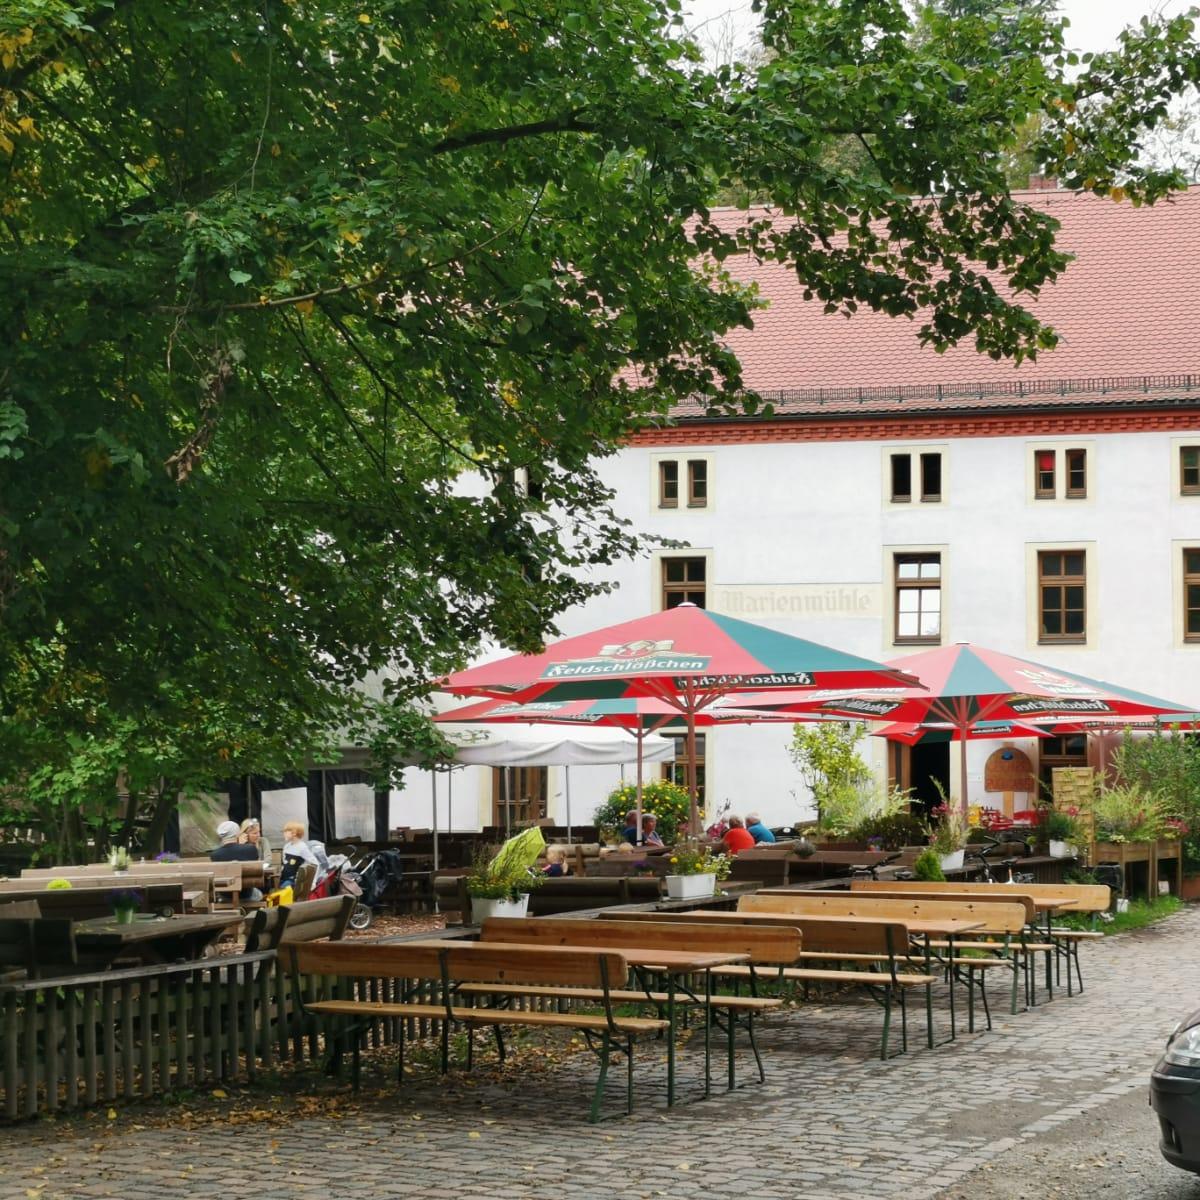 Restaurant "Marienmühle" in Wachau